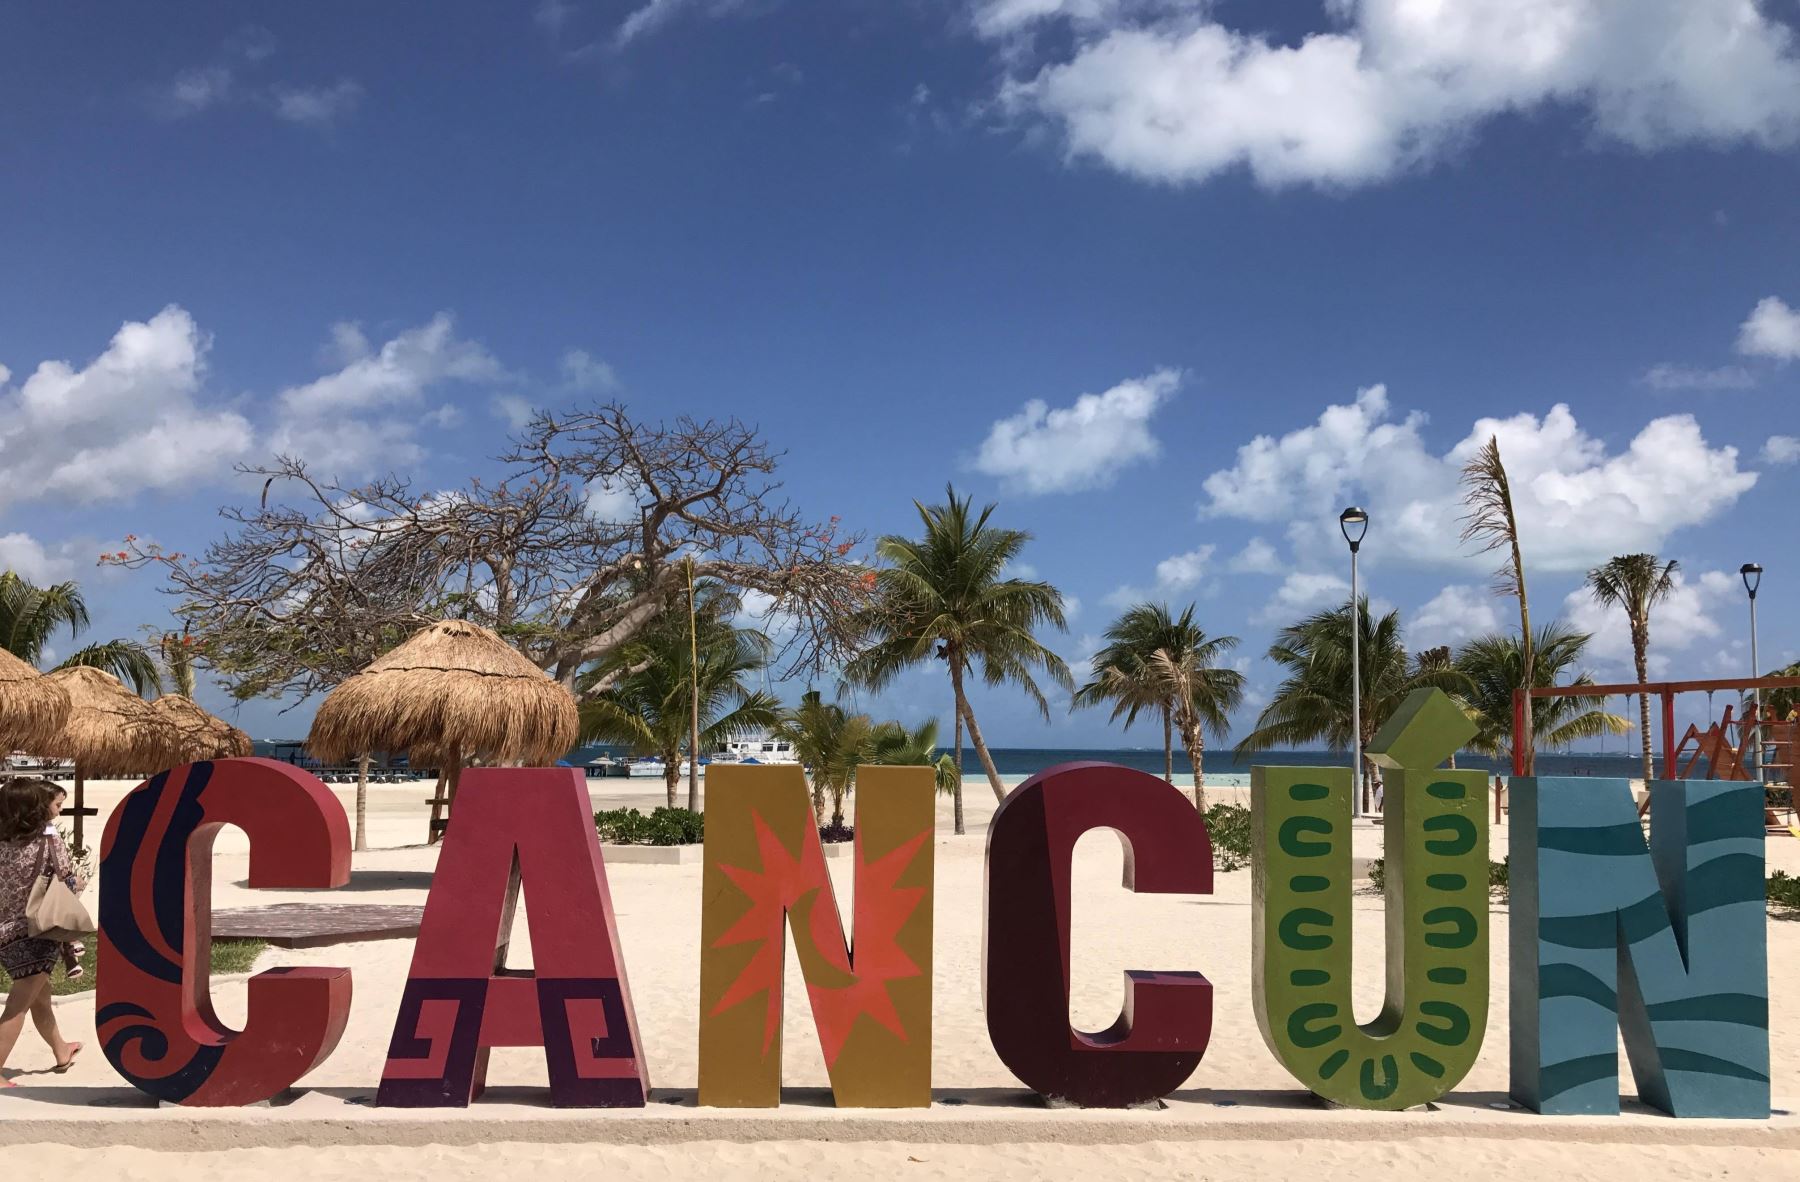 Destino turístico Cancún, México. AFP